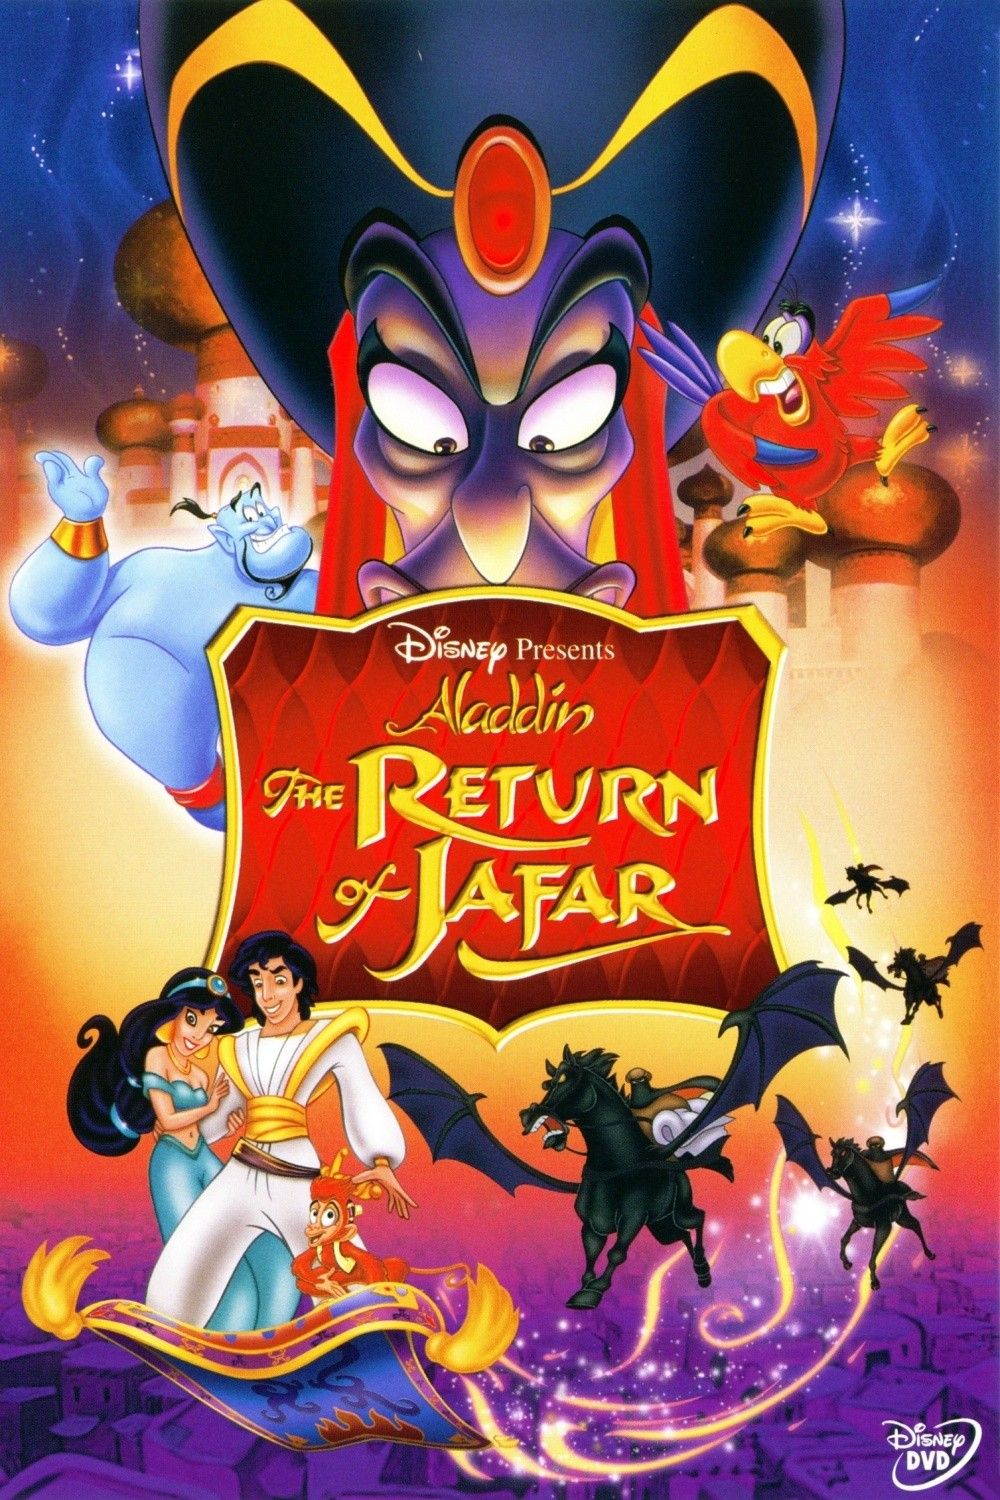 تحميل فيلم علاء الدين وعودة جعفر Aladdin and the Return of Jafar 1994 مدبلج بالعربية الفصحى